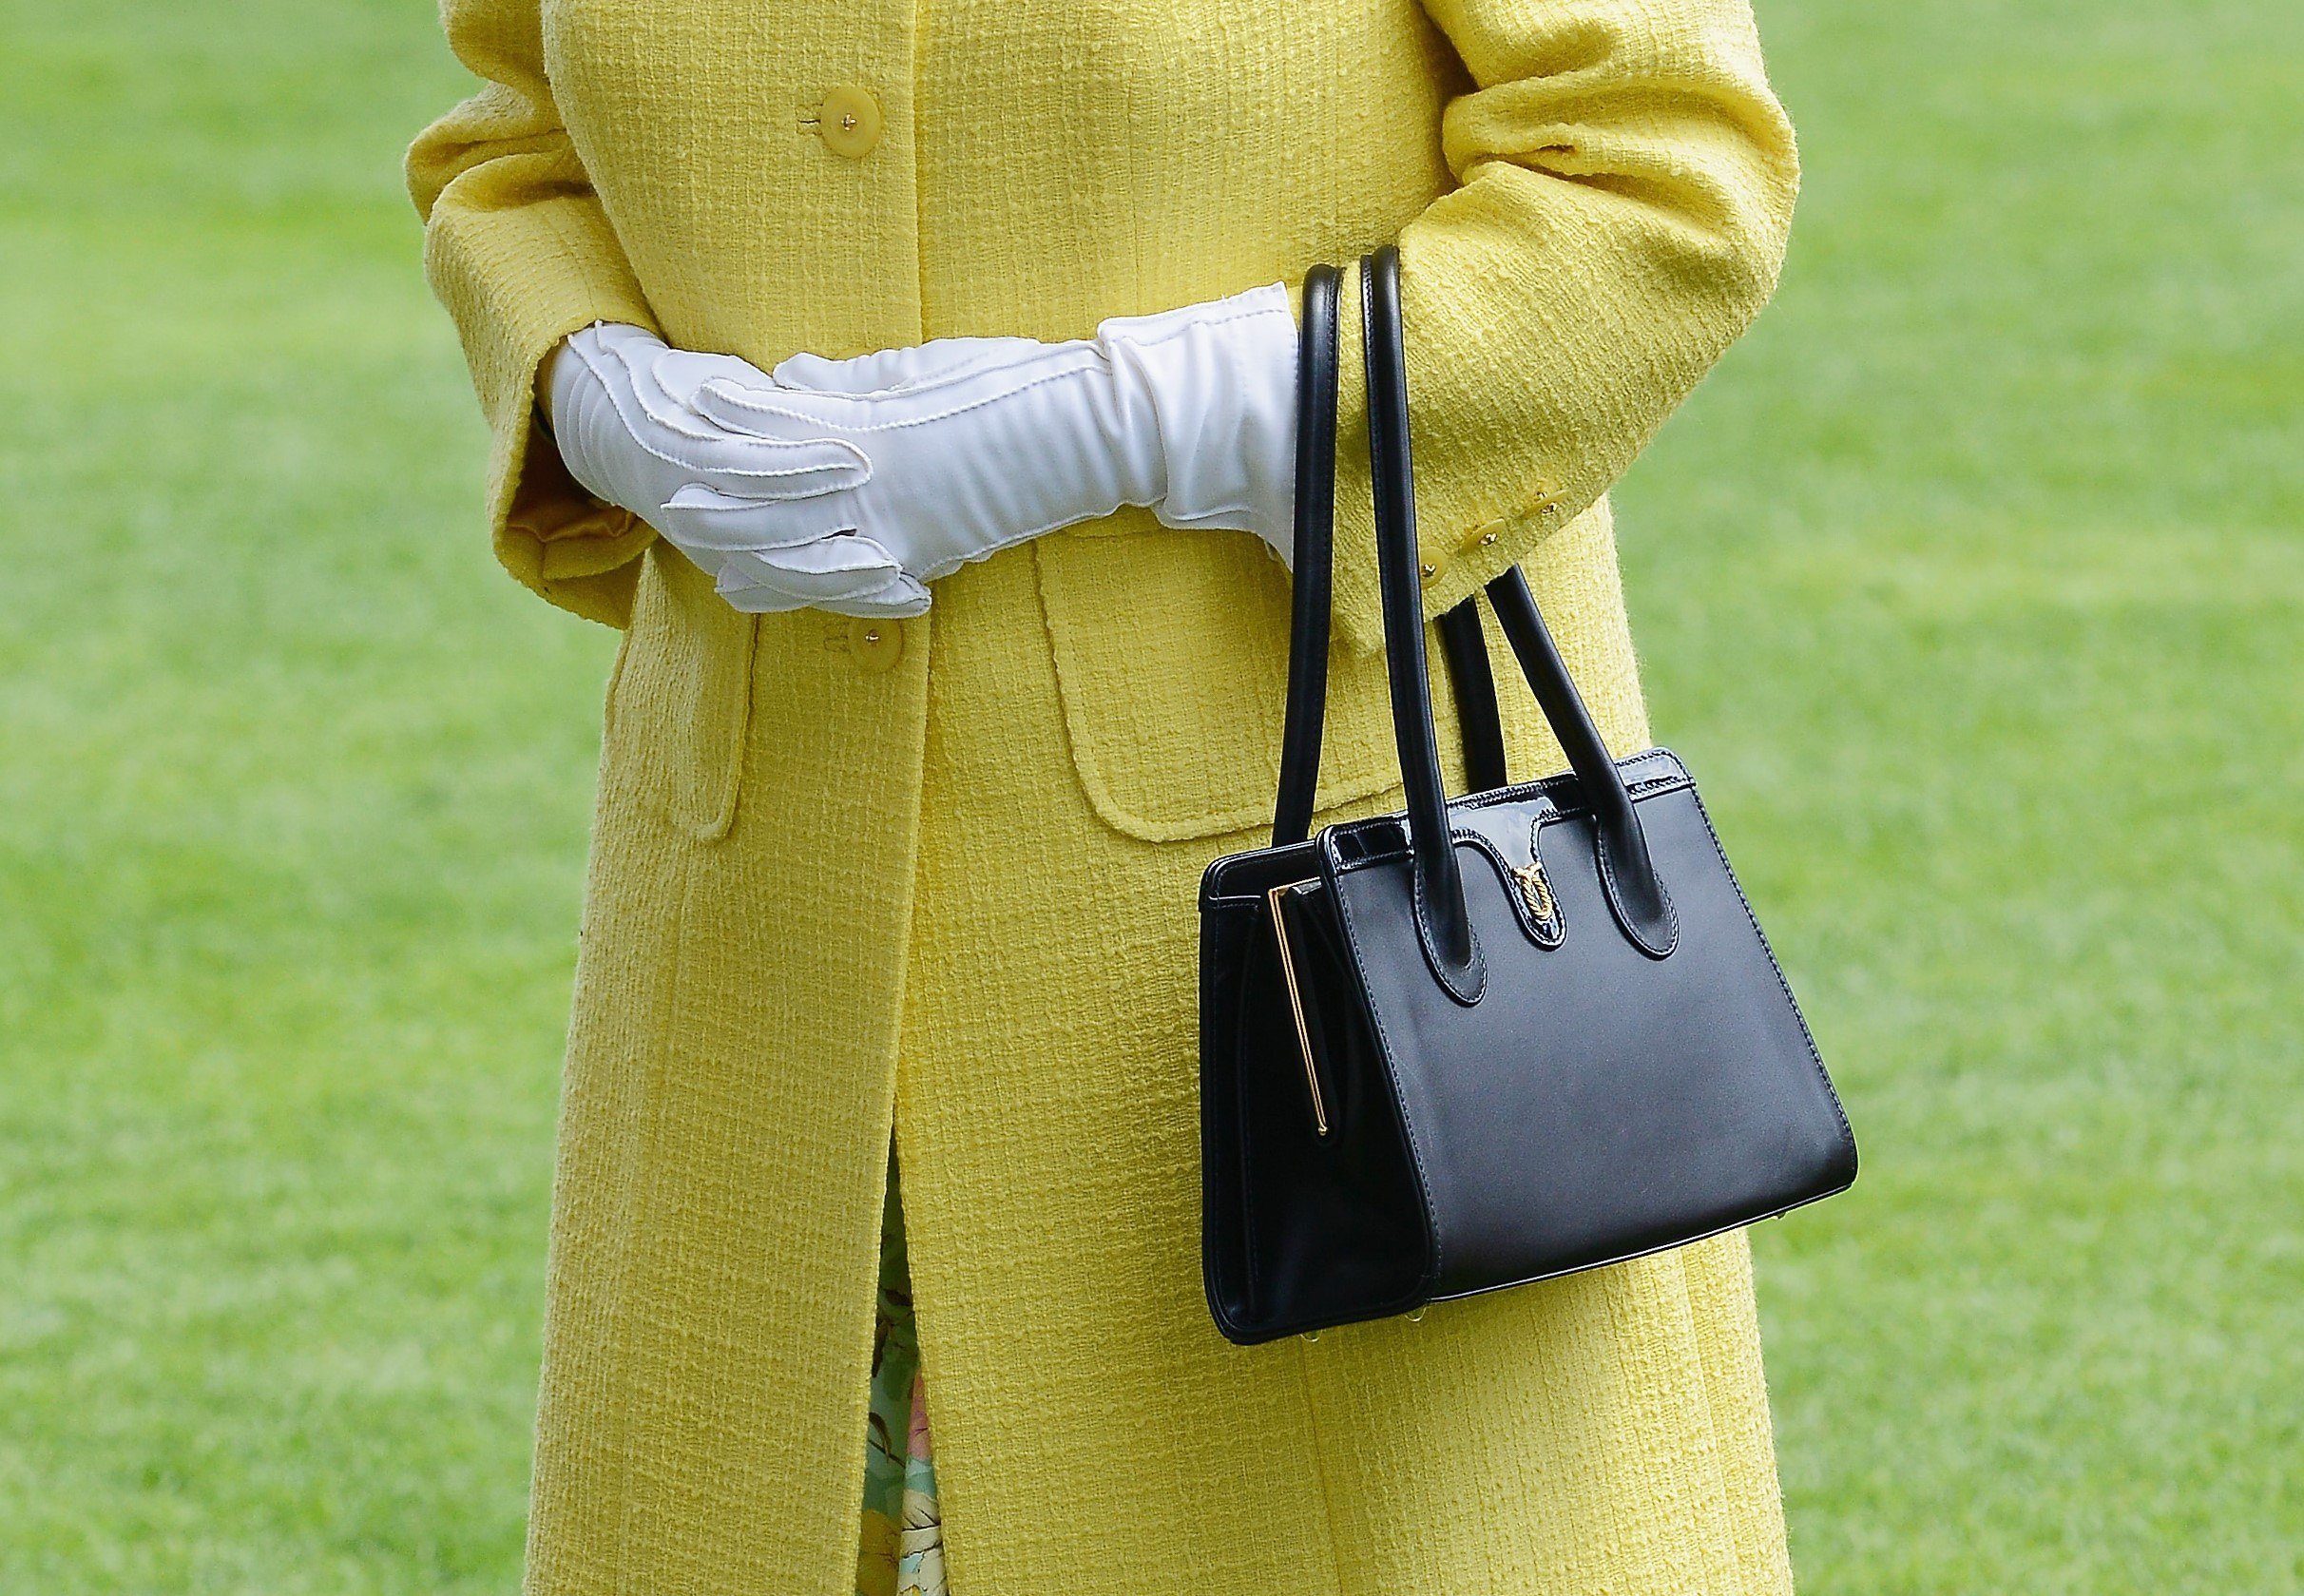 Queen Elizabeth purse